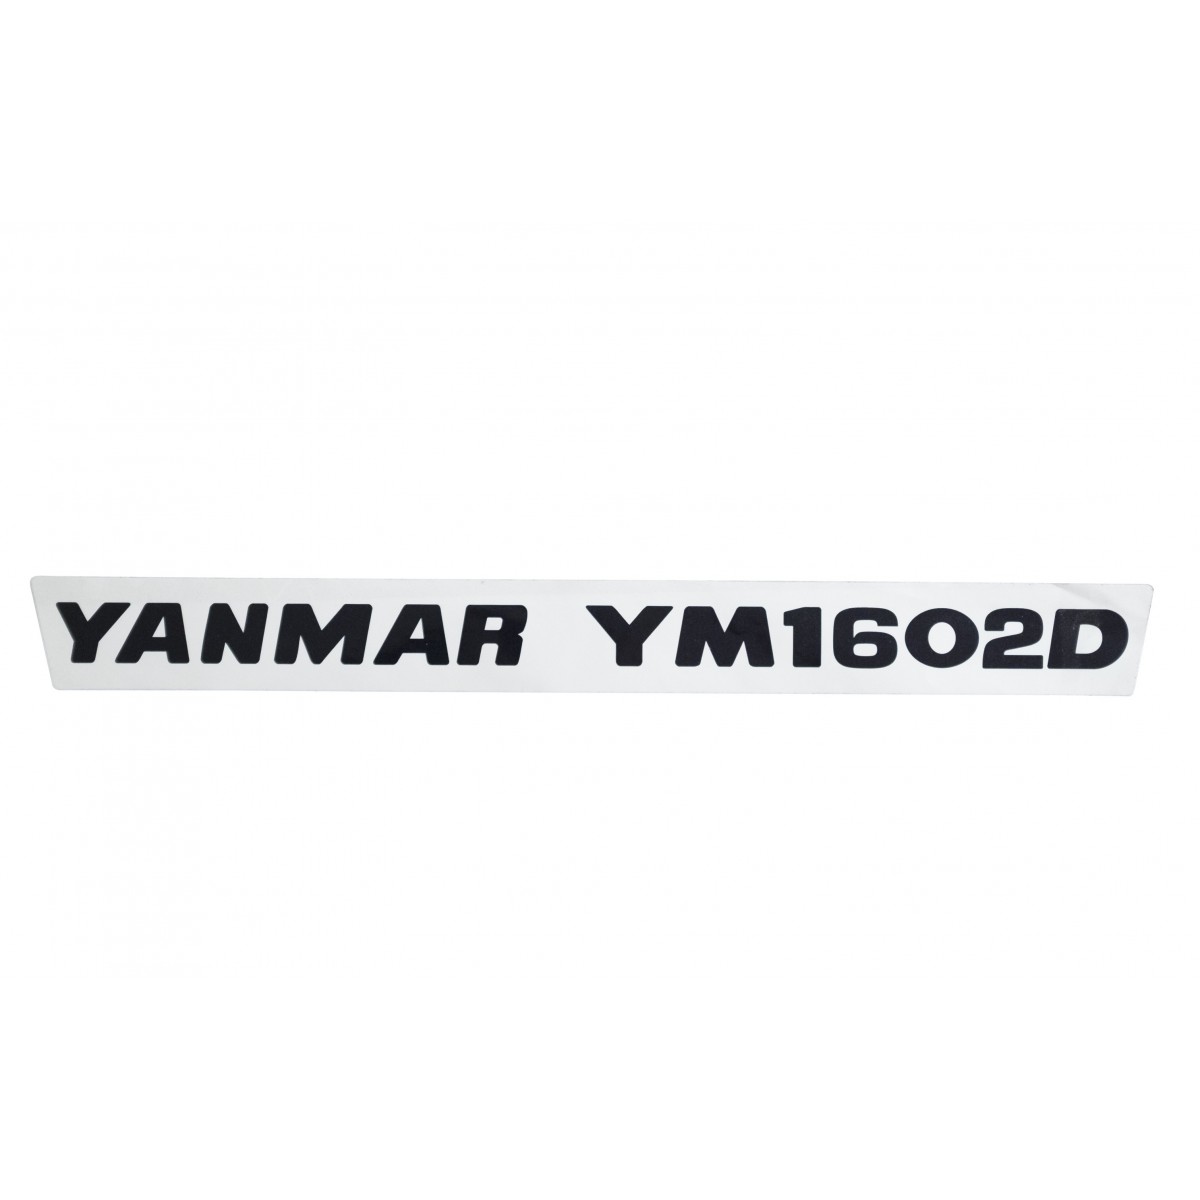 Sticker (1) Yanmar YM1602D